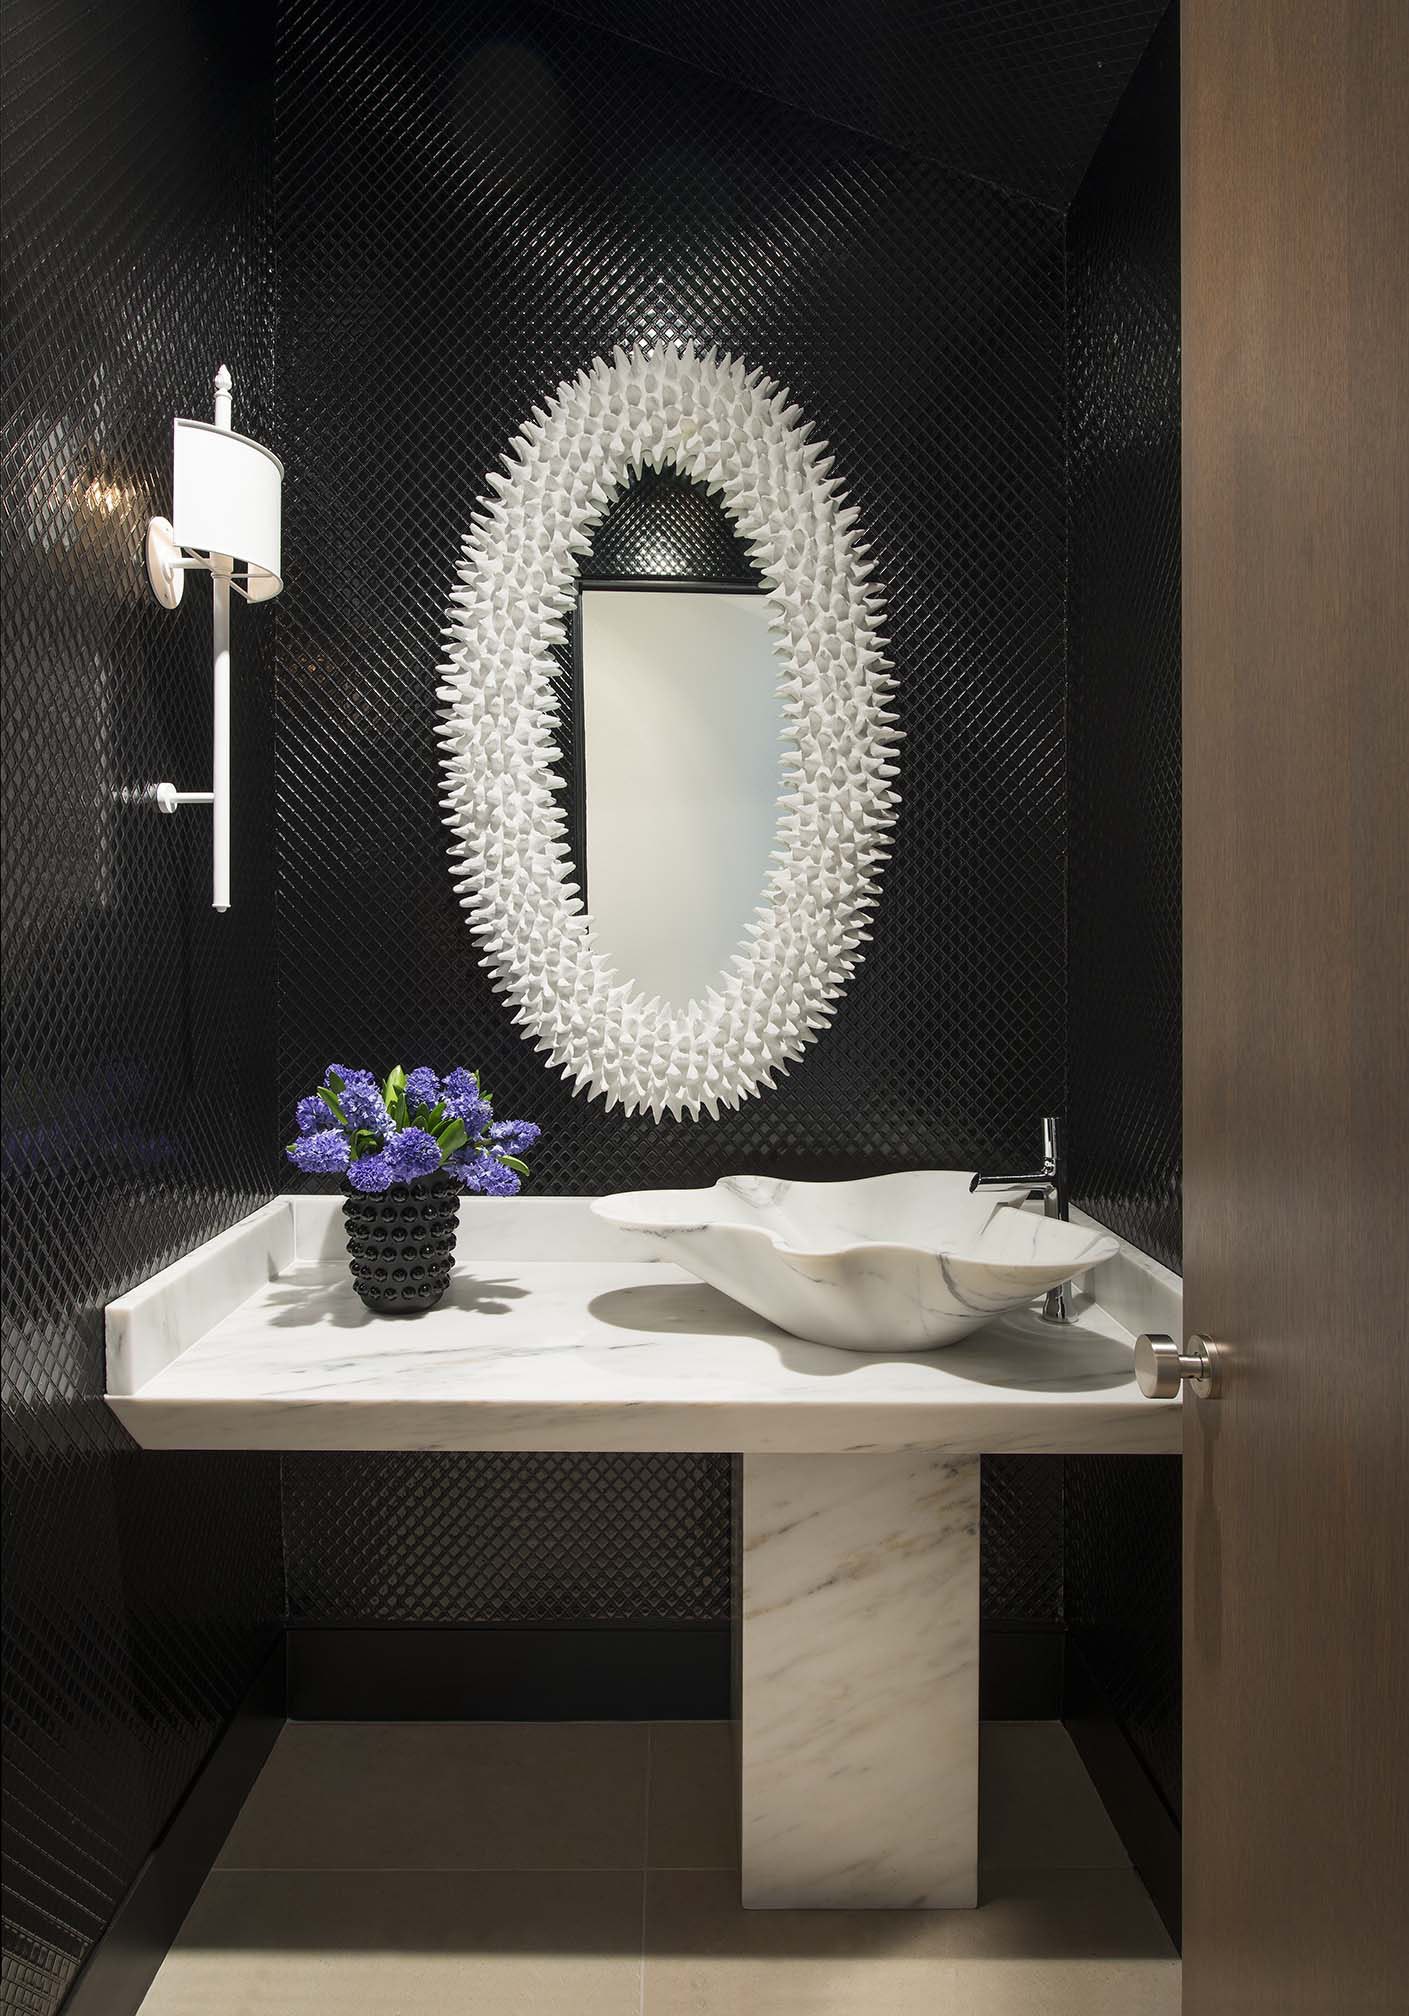 Hình ảnh một góc phòng tắm với bồn rửa bằng đá cẩm thạch trắng, tương phản tường ốp gạch đen, khung gương độc đáo